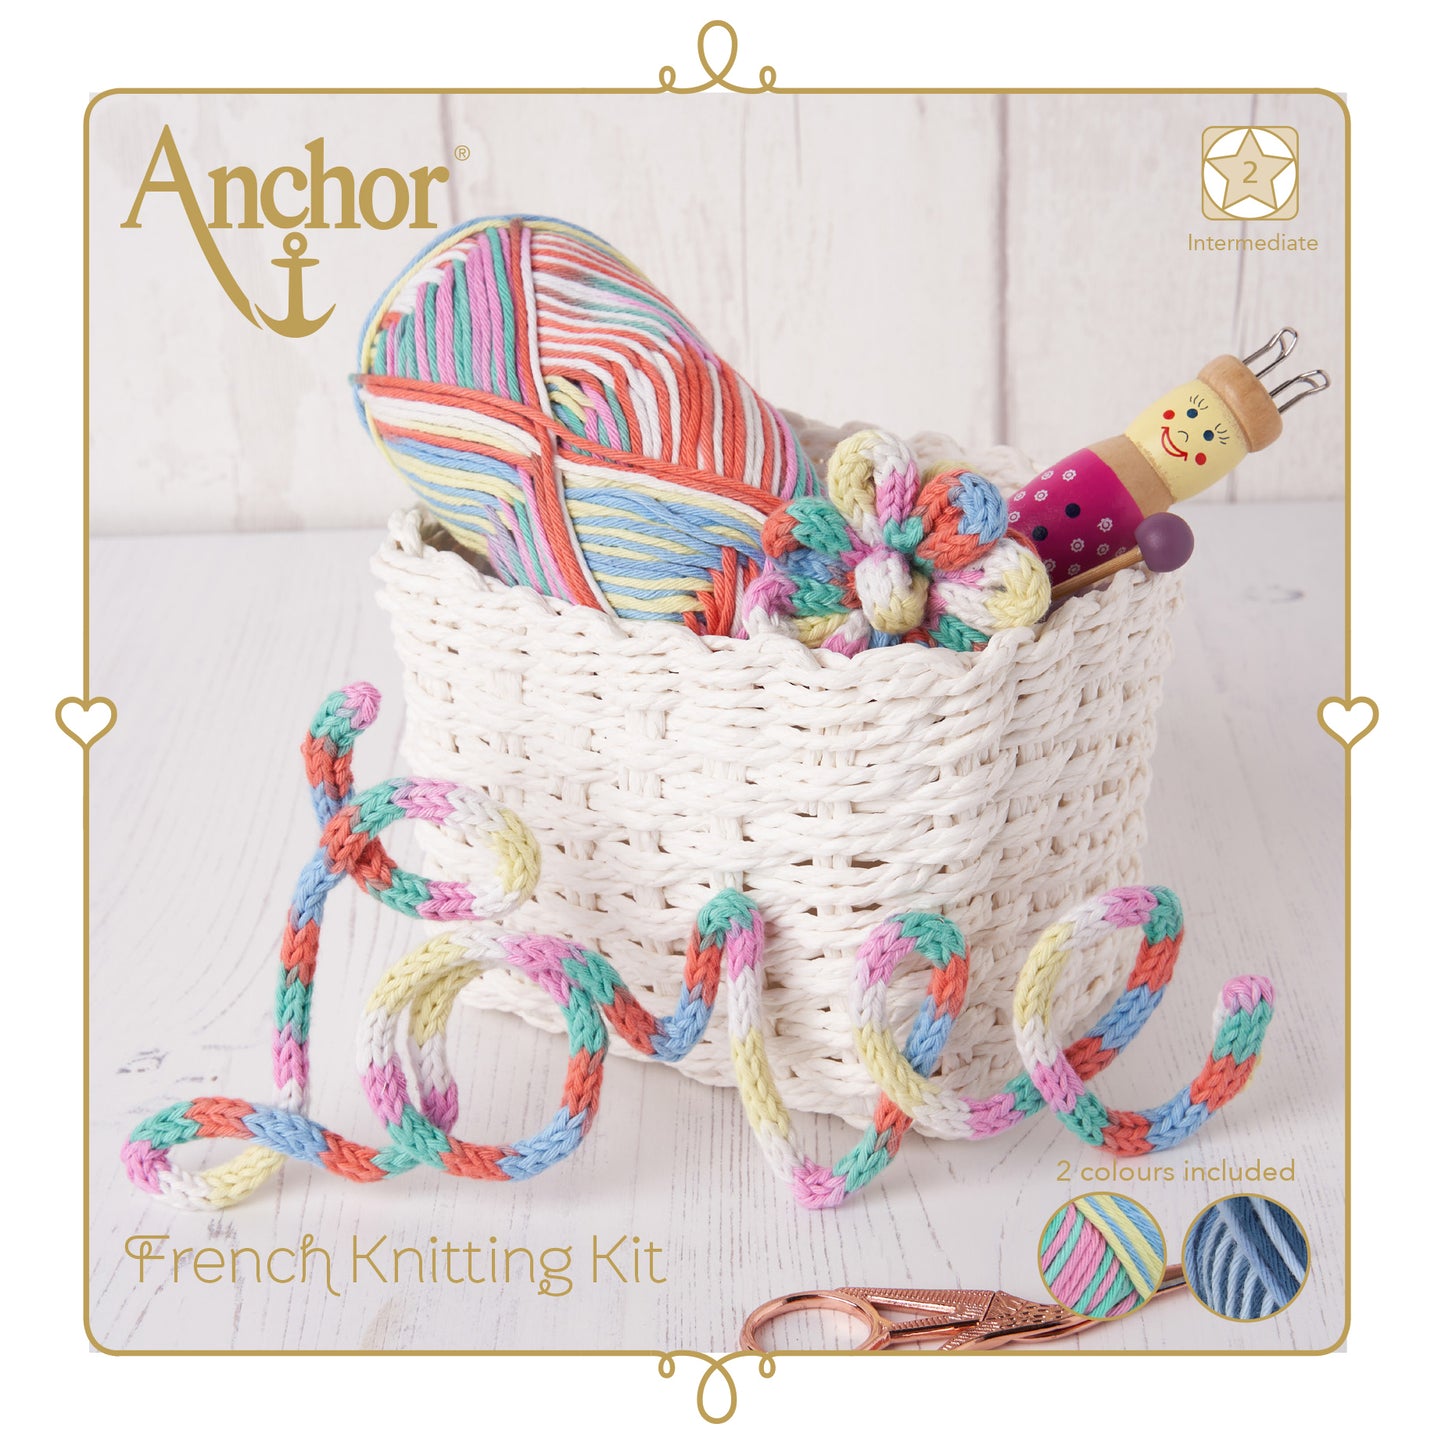 French Knitting Kit for Beginners